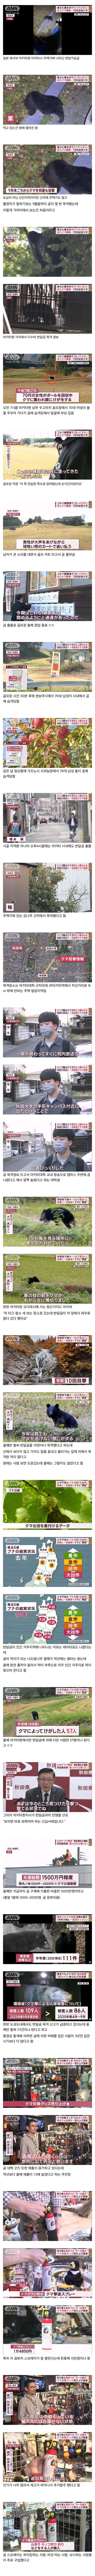 반달곰 때문에 난리난 일본